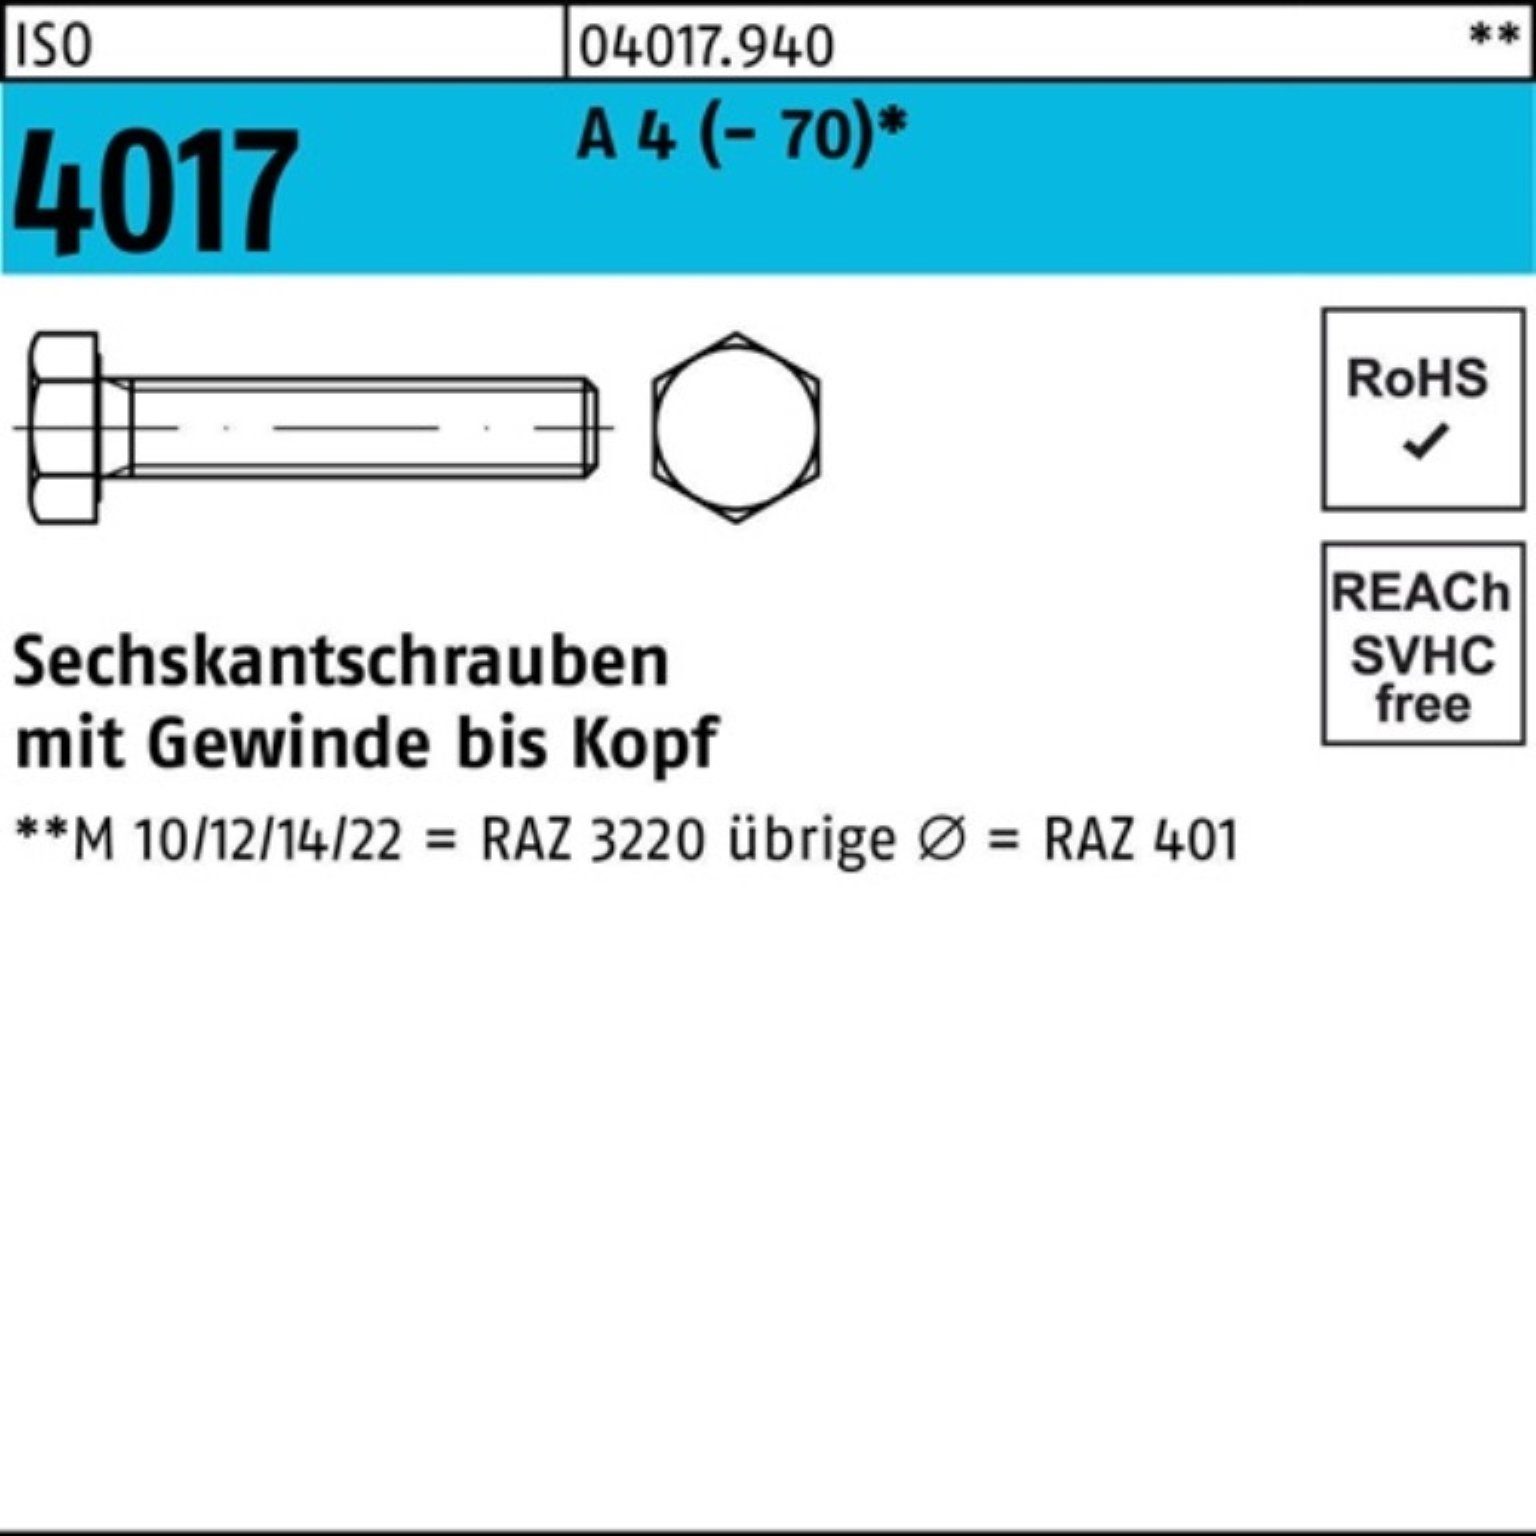 100 ISO 100er Stück (70) VG 4 A M12x 30 Pack Sechskantschraube 4017 Sechskantschraube Bufab